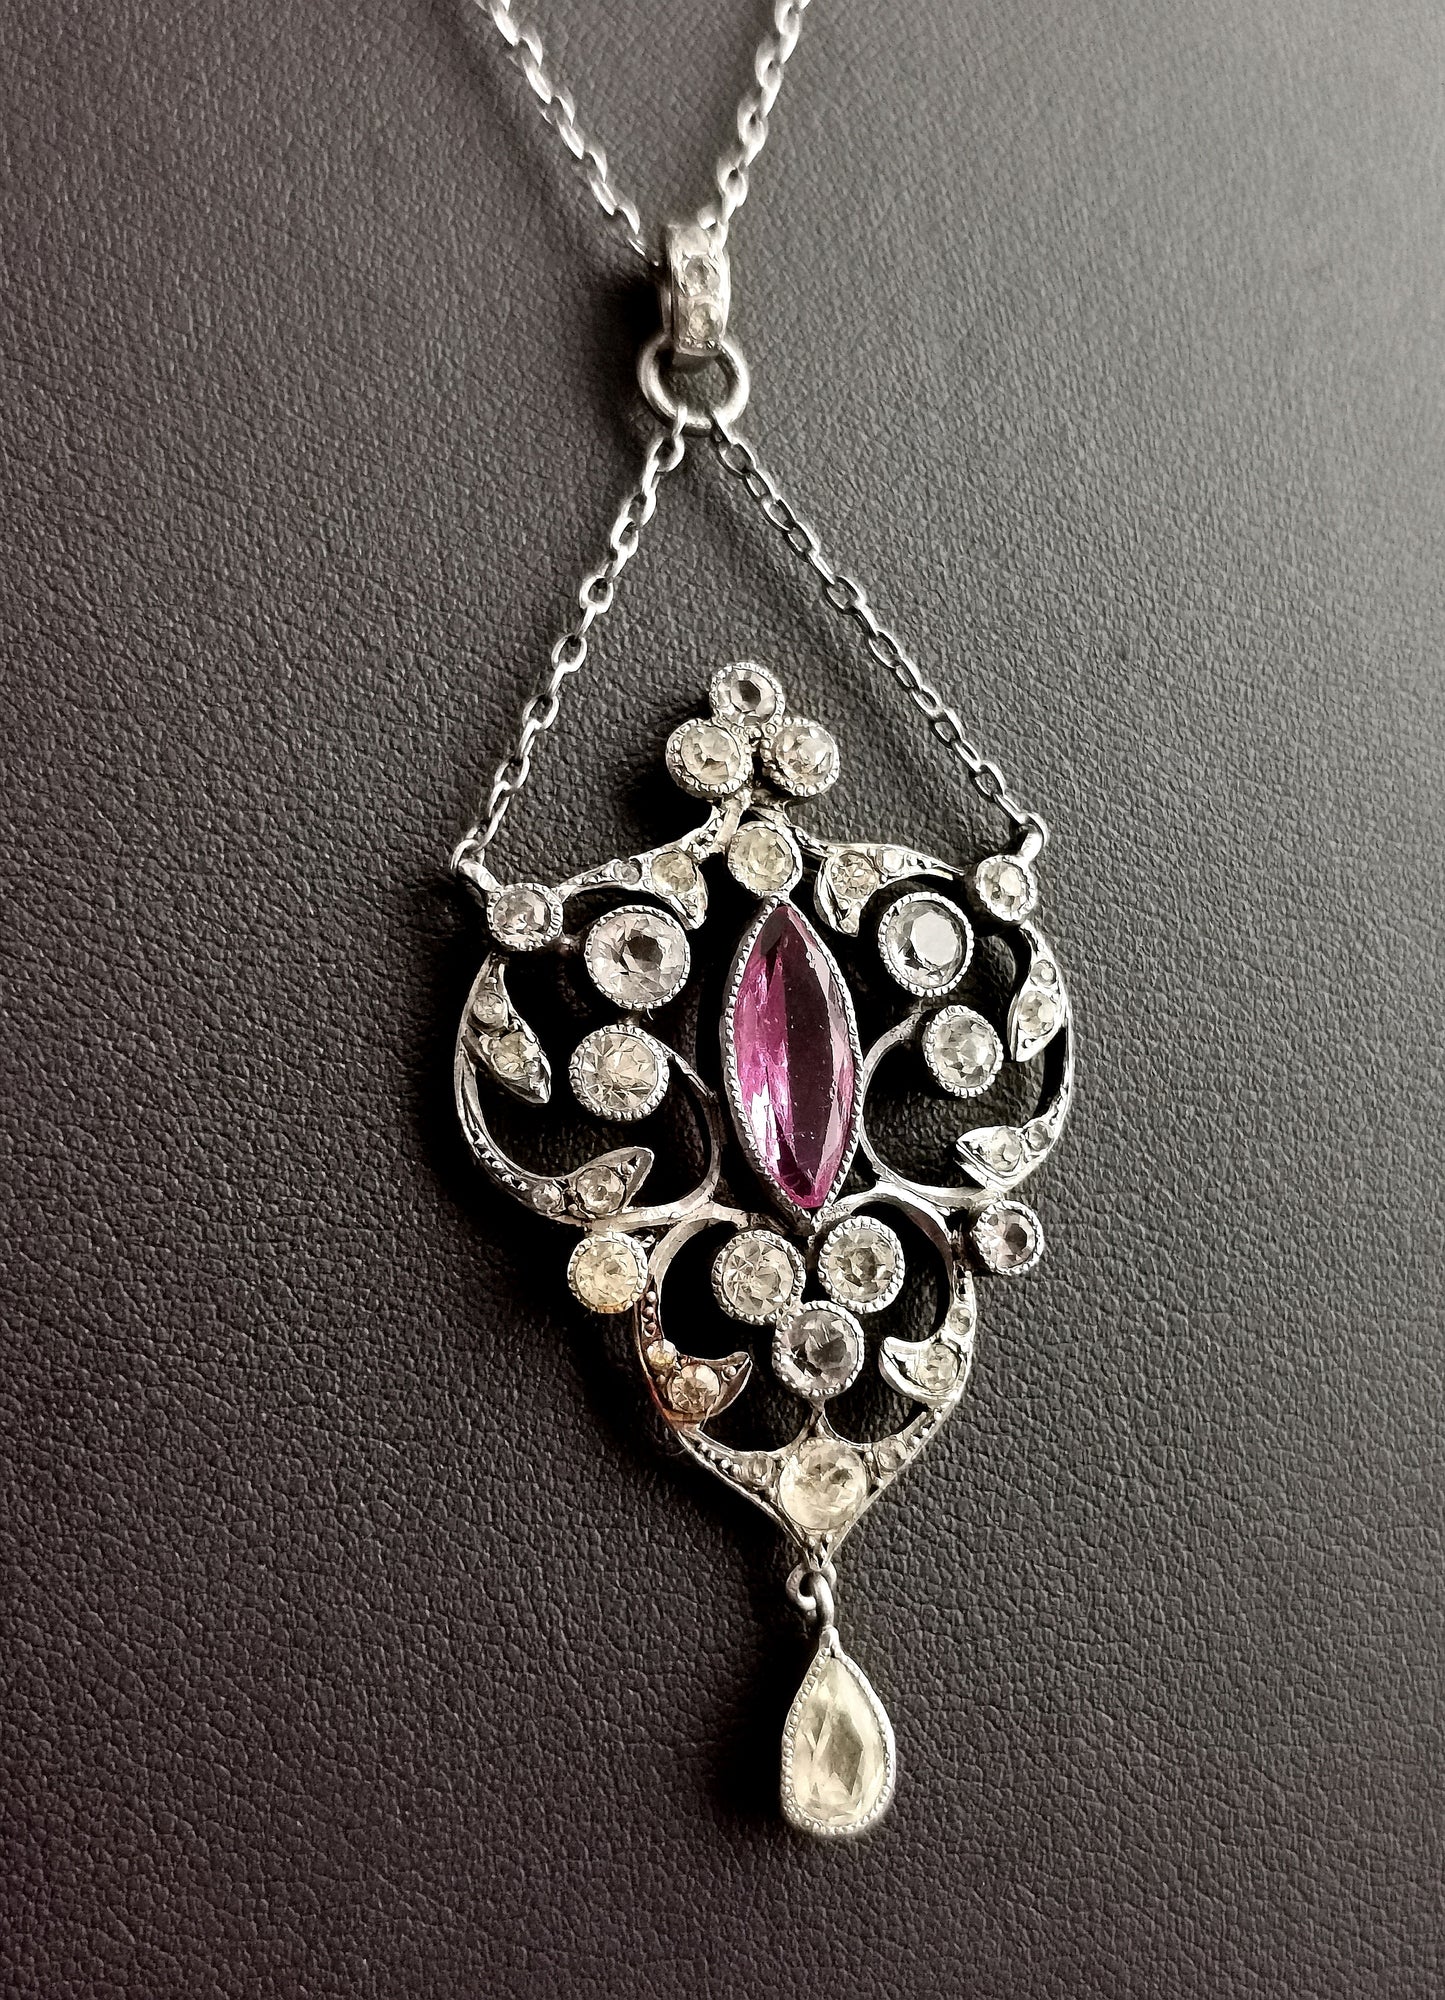 Antique Belle Epoque paste drop pendant necklace, sterling silver